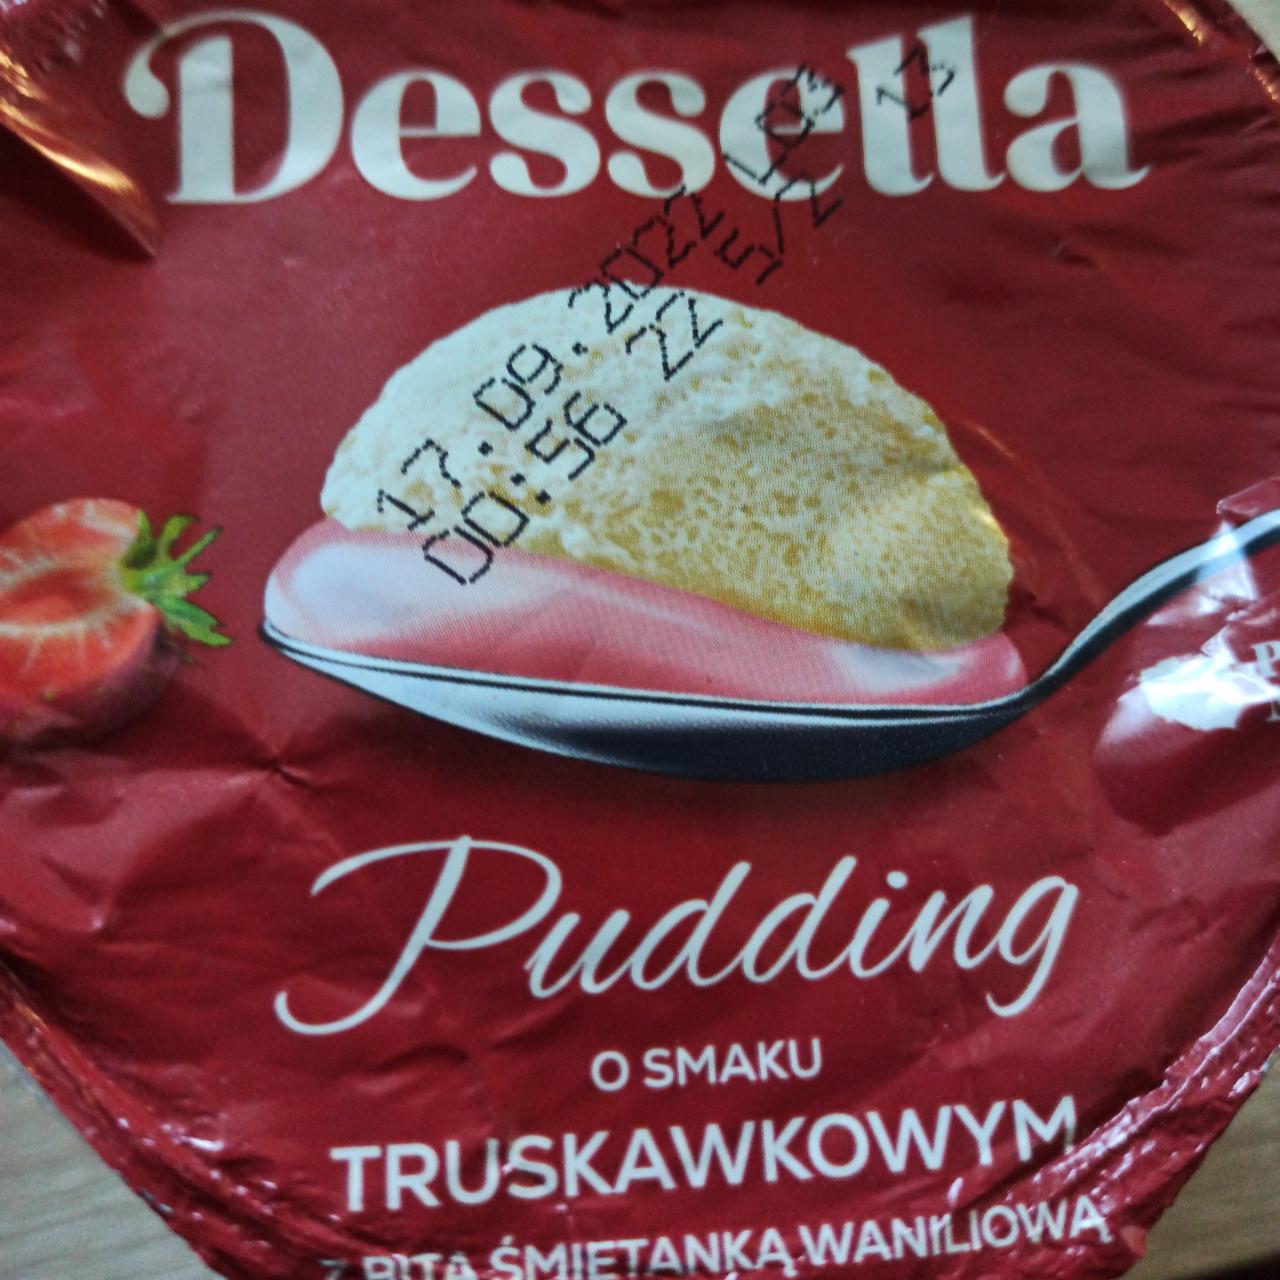 Zdjęcia - Pudding o smaku truskawkowym z bitą śmietanką waniliową Dessella